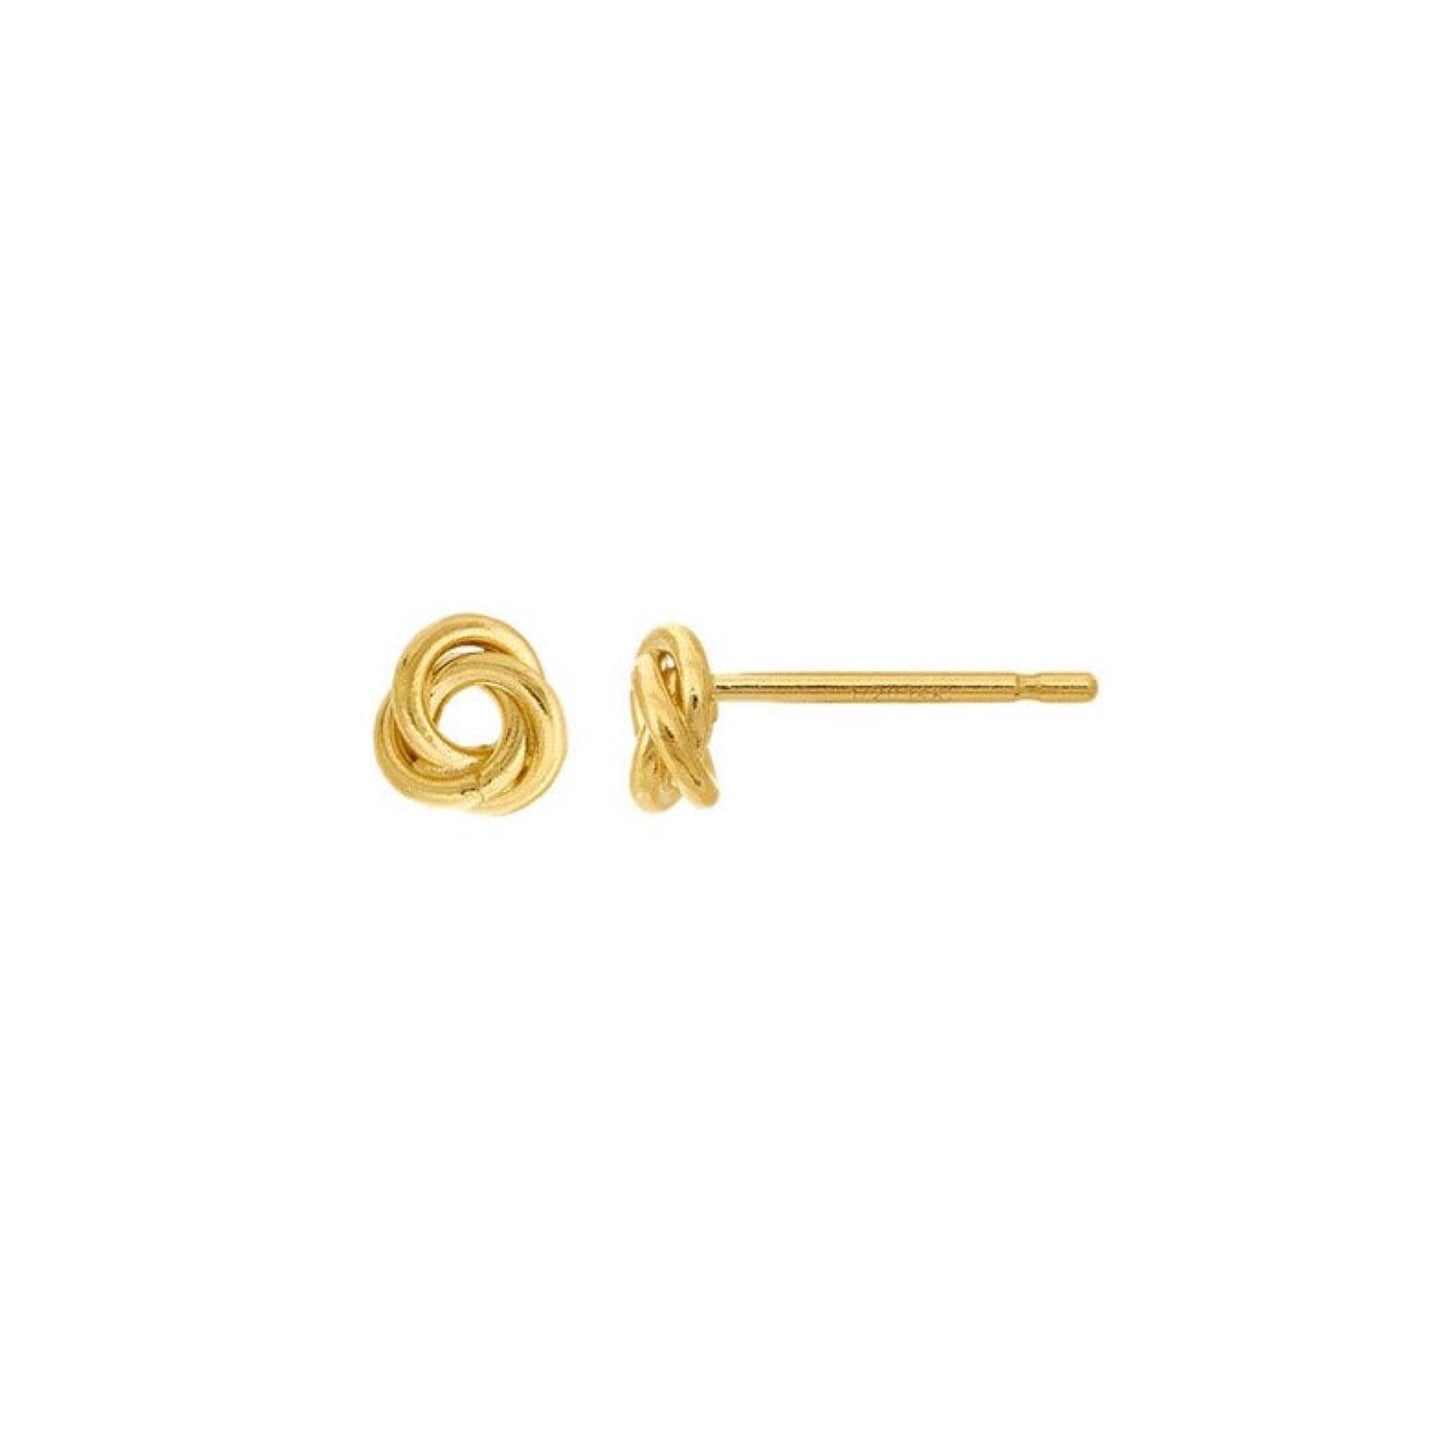 stud earrings / love knot - 5mm